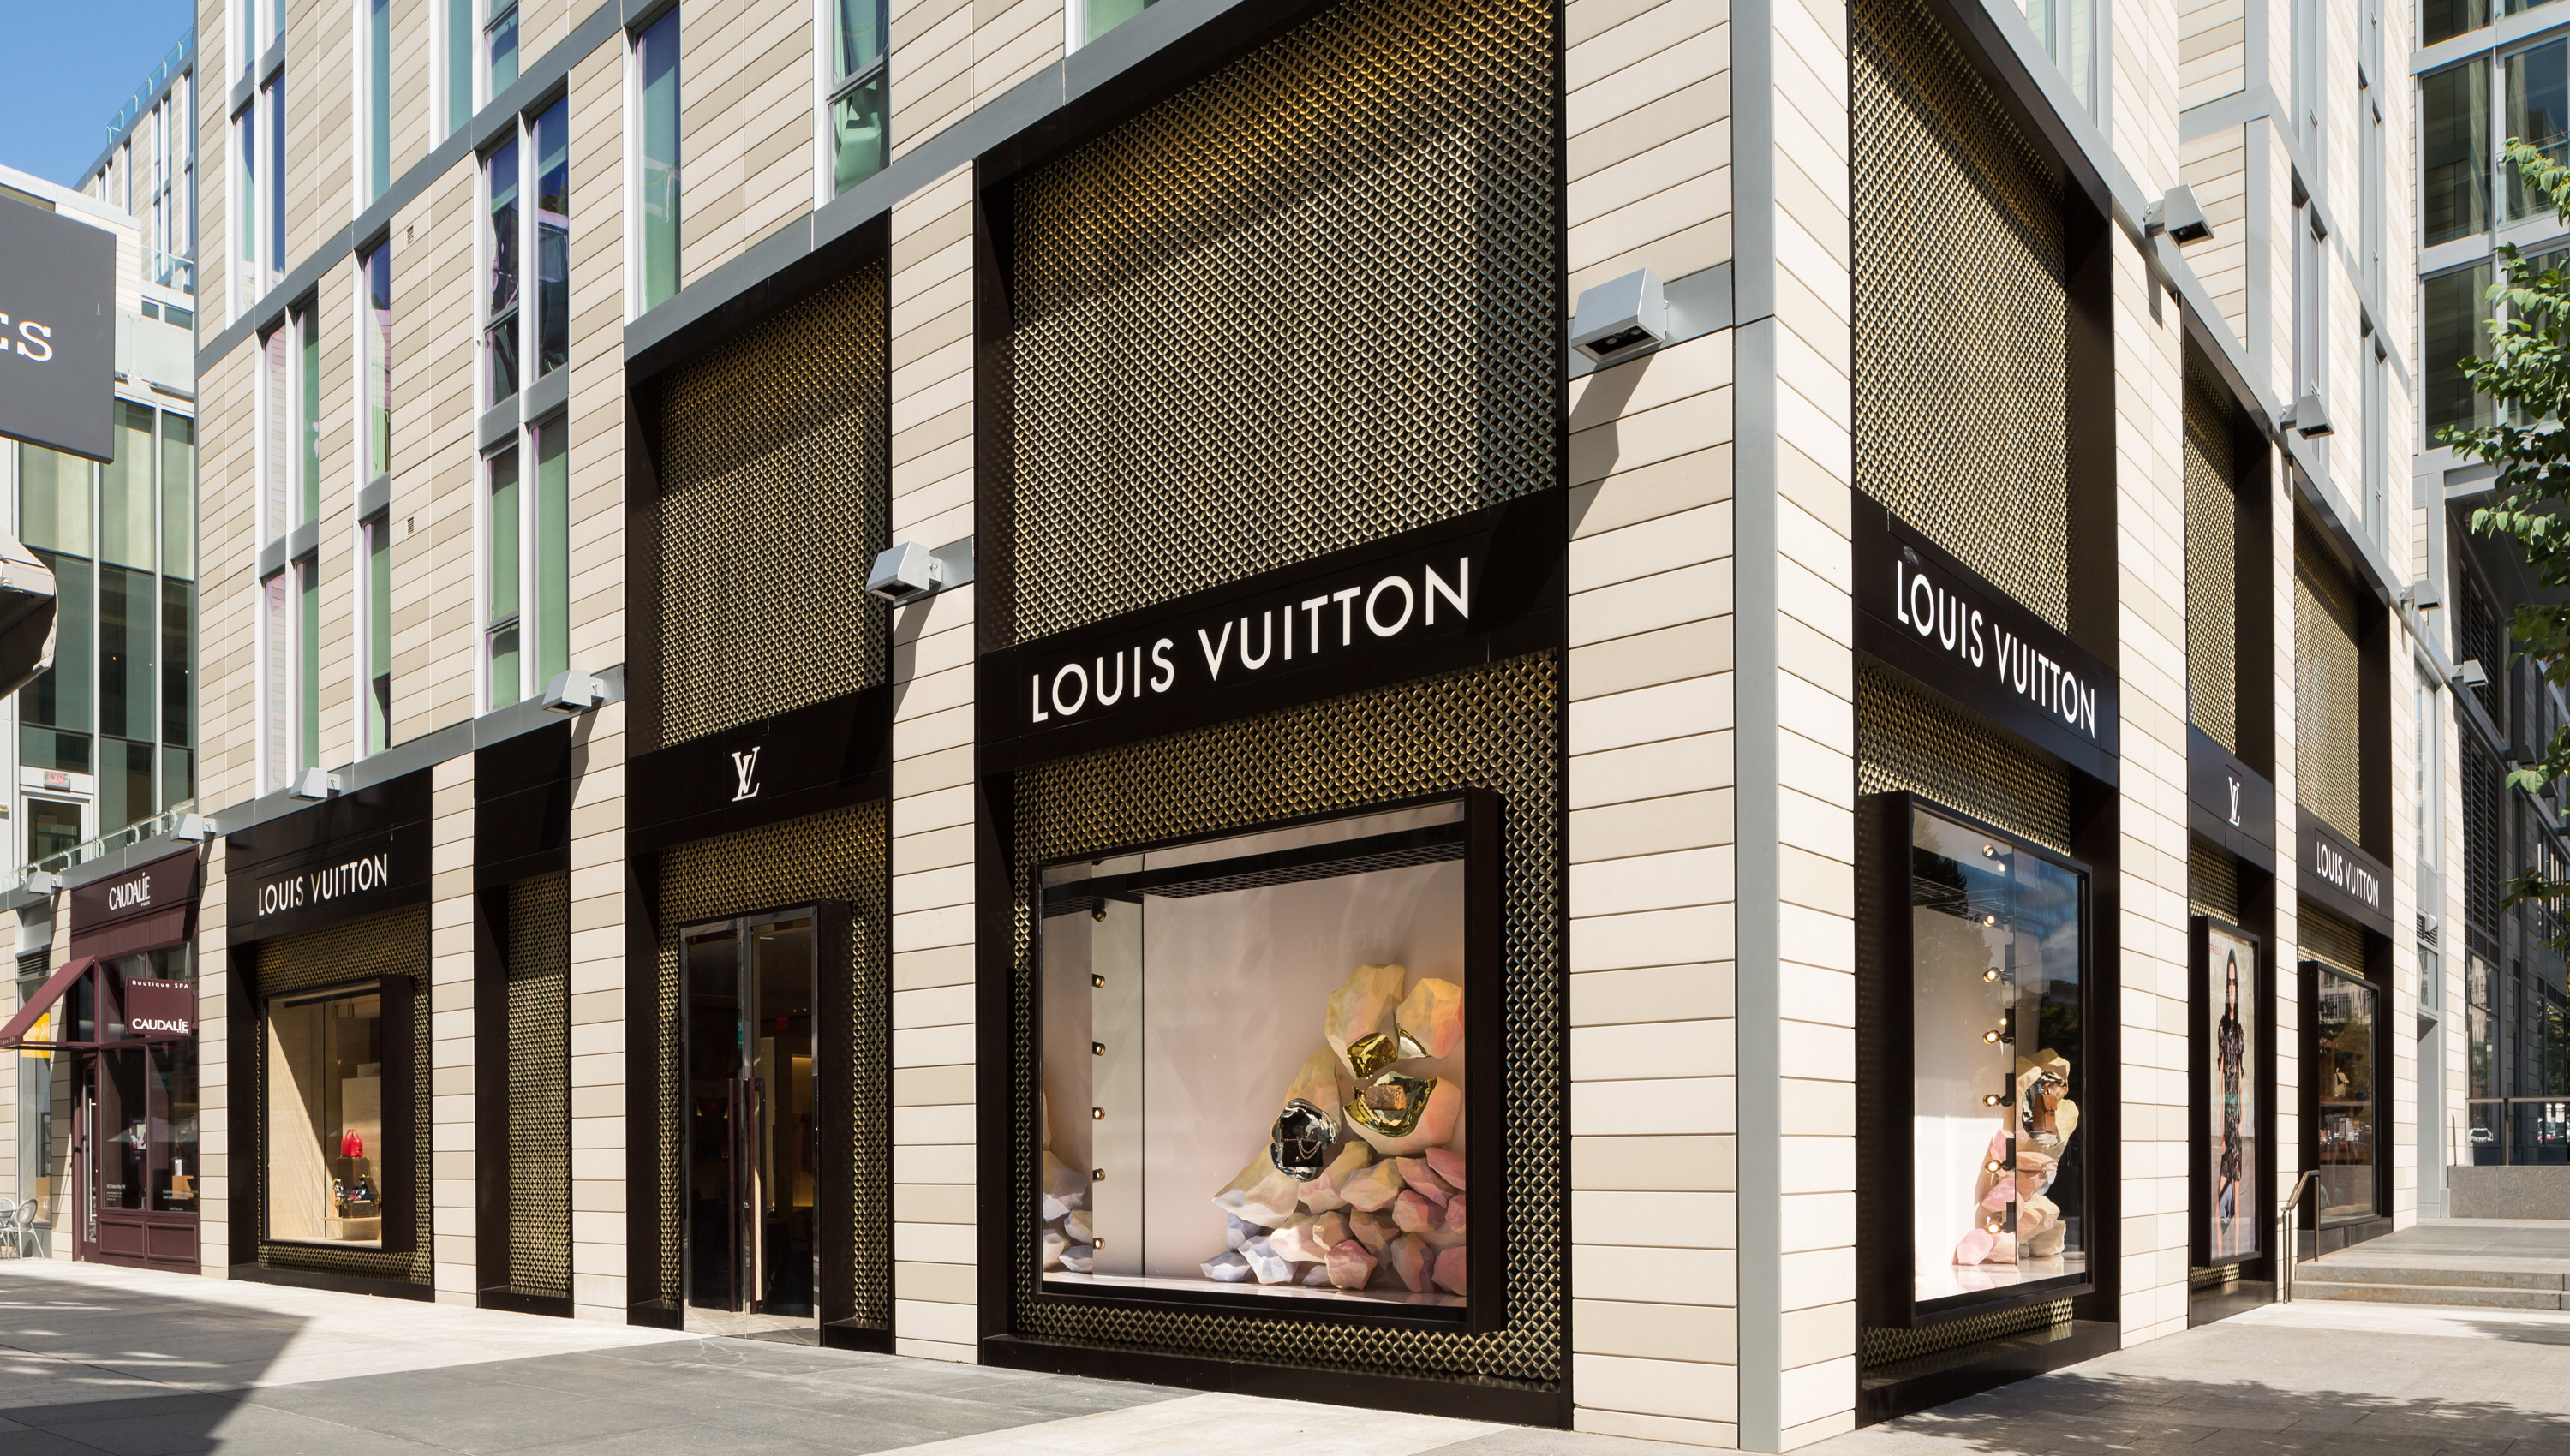 Louis Vuitton Irving Tx Call Center